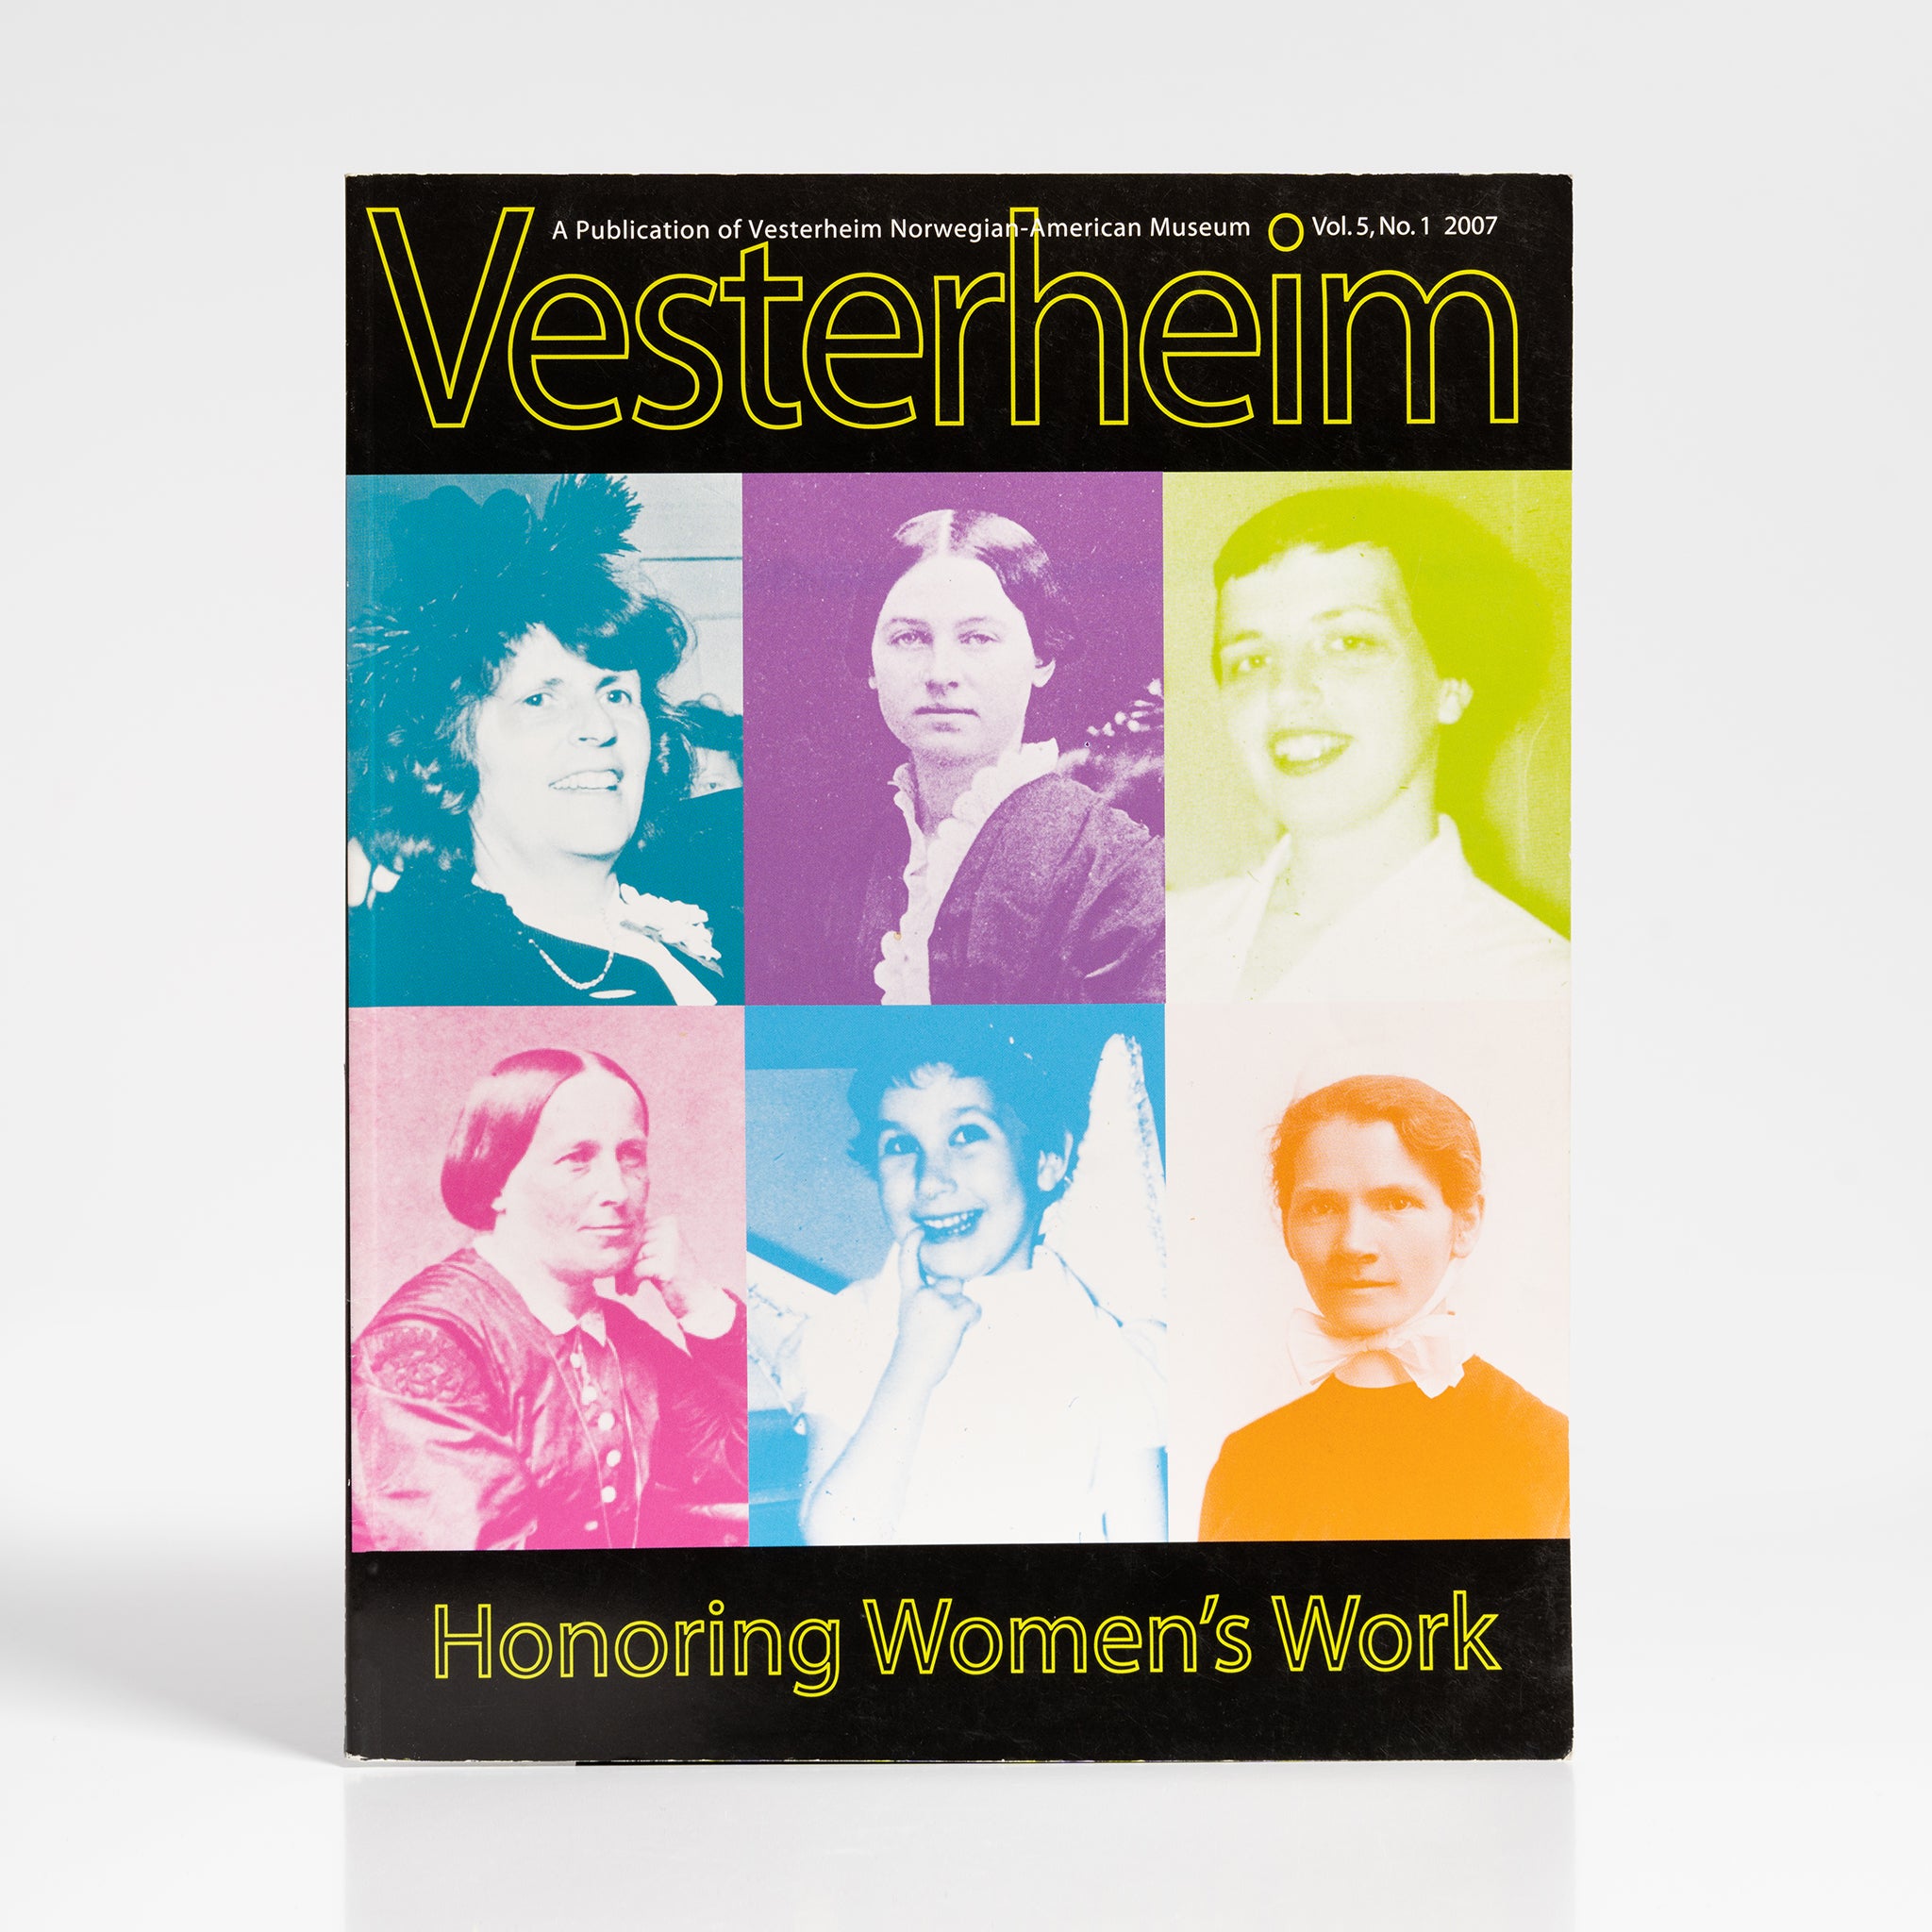 Vesterheim Magazine Vol. 5, No. 1 2007 - Honoring Women's Work